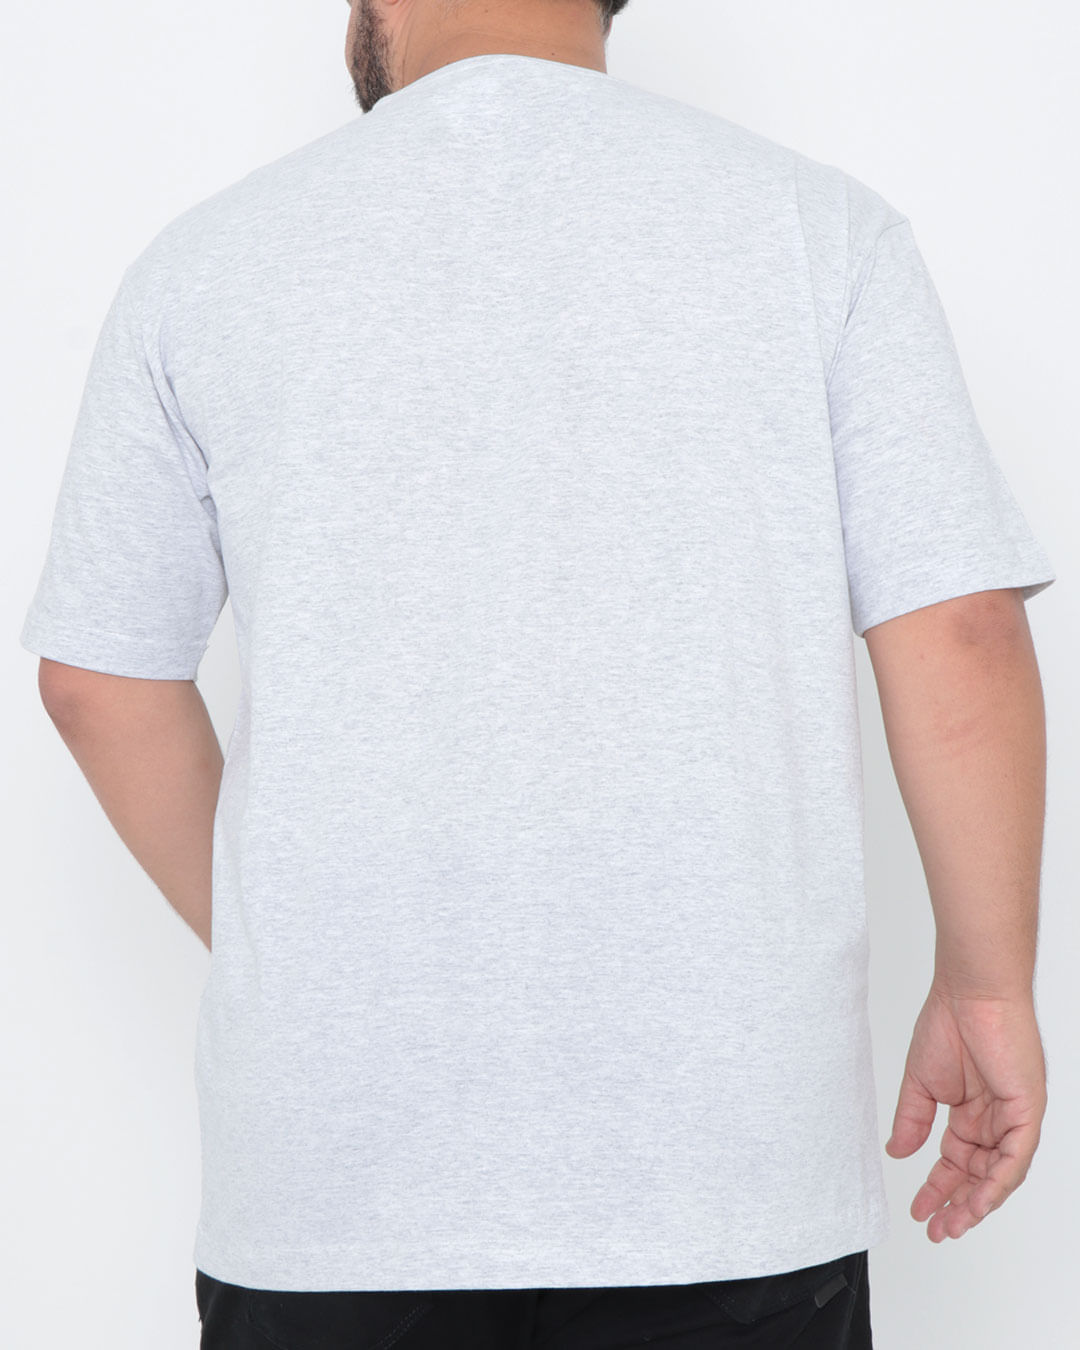 Camiseta-plus-size-manga-curta-estampa-grafite-cinza-claro